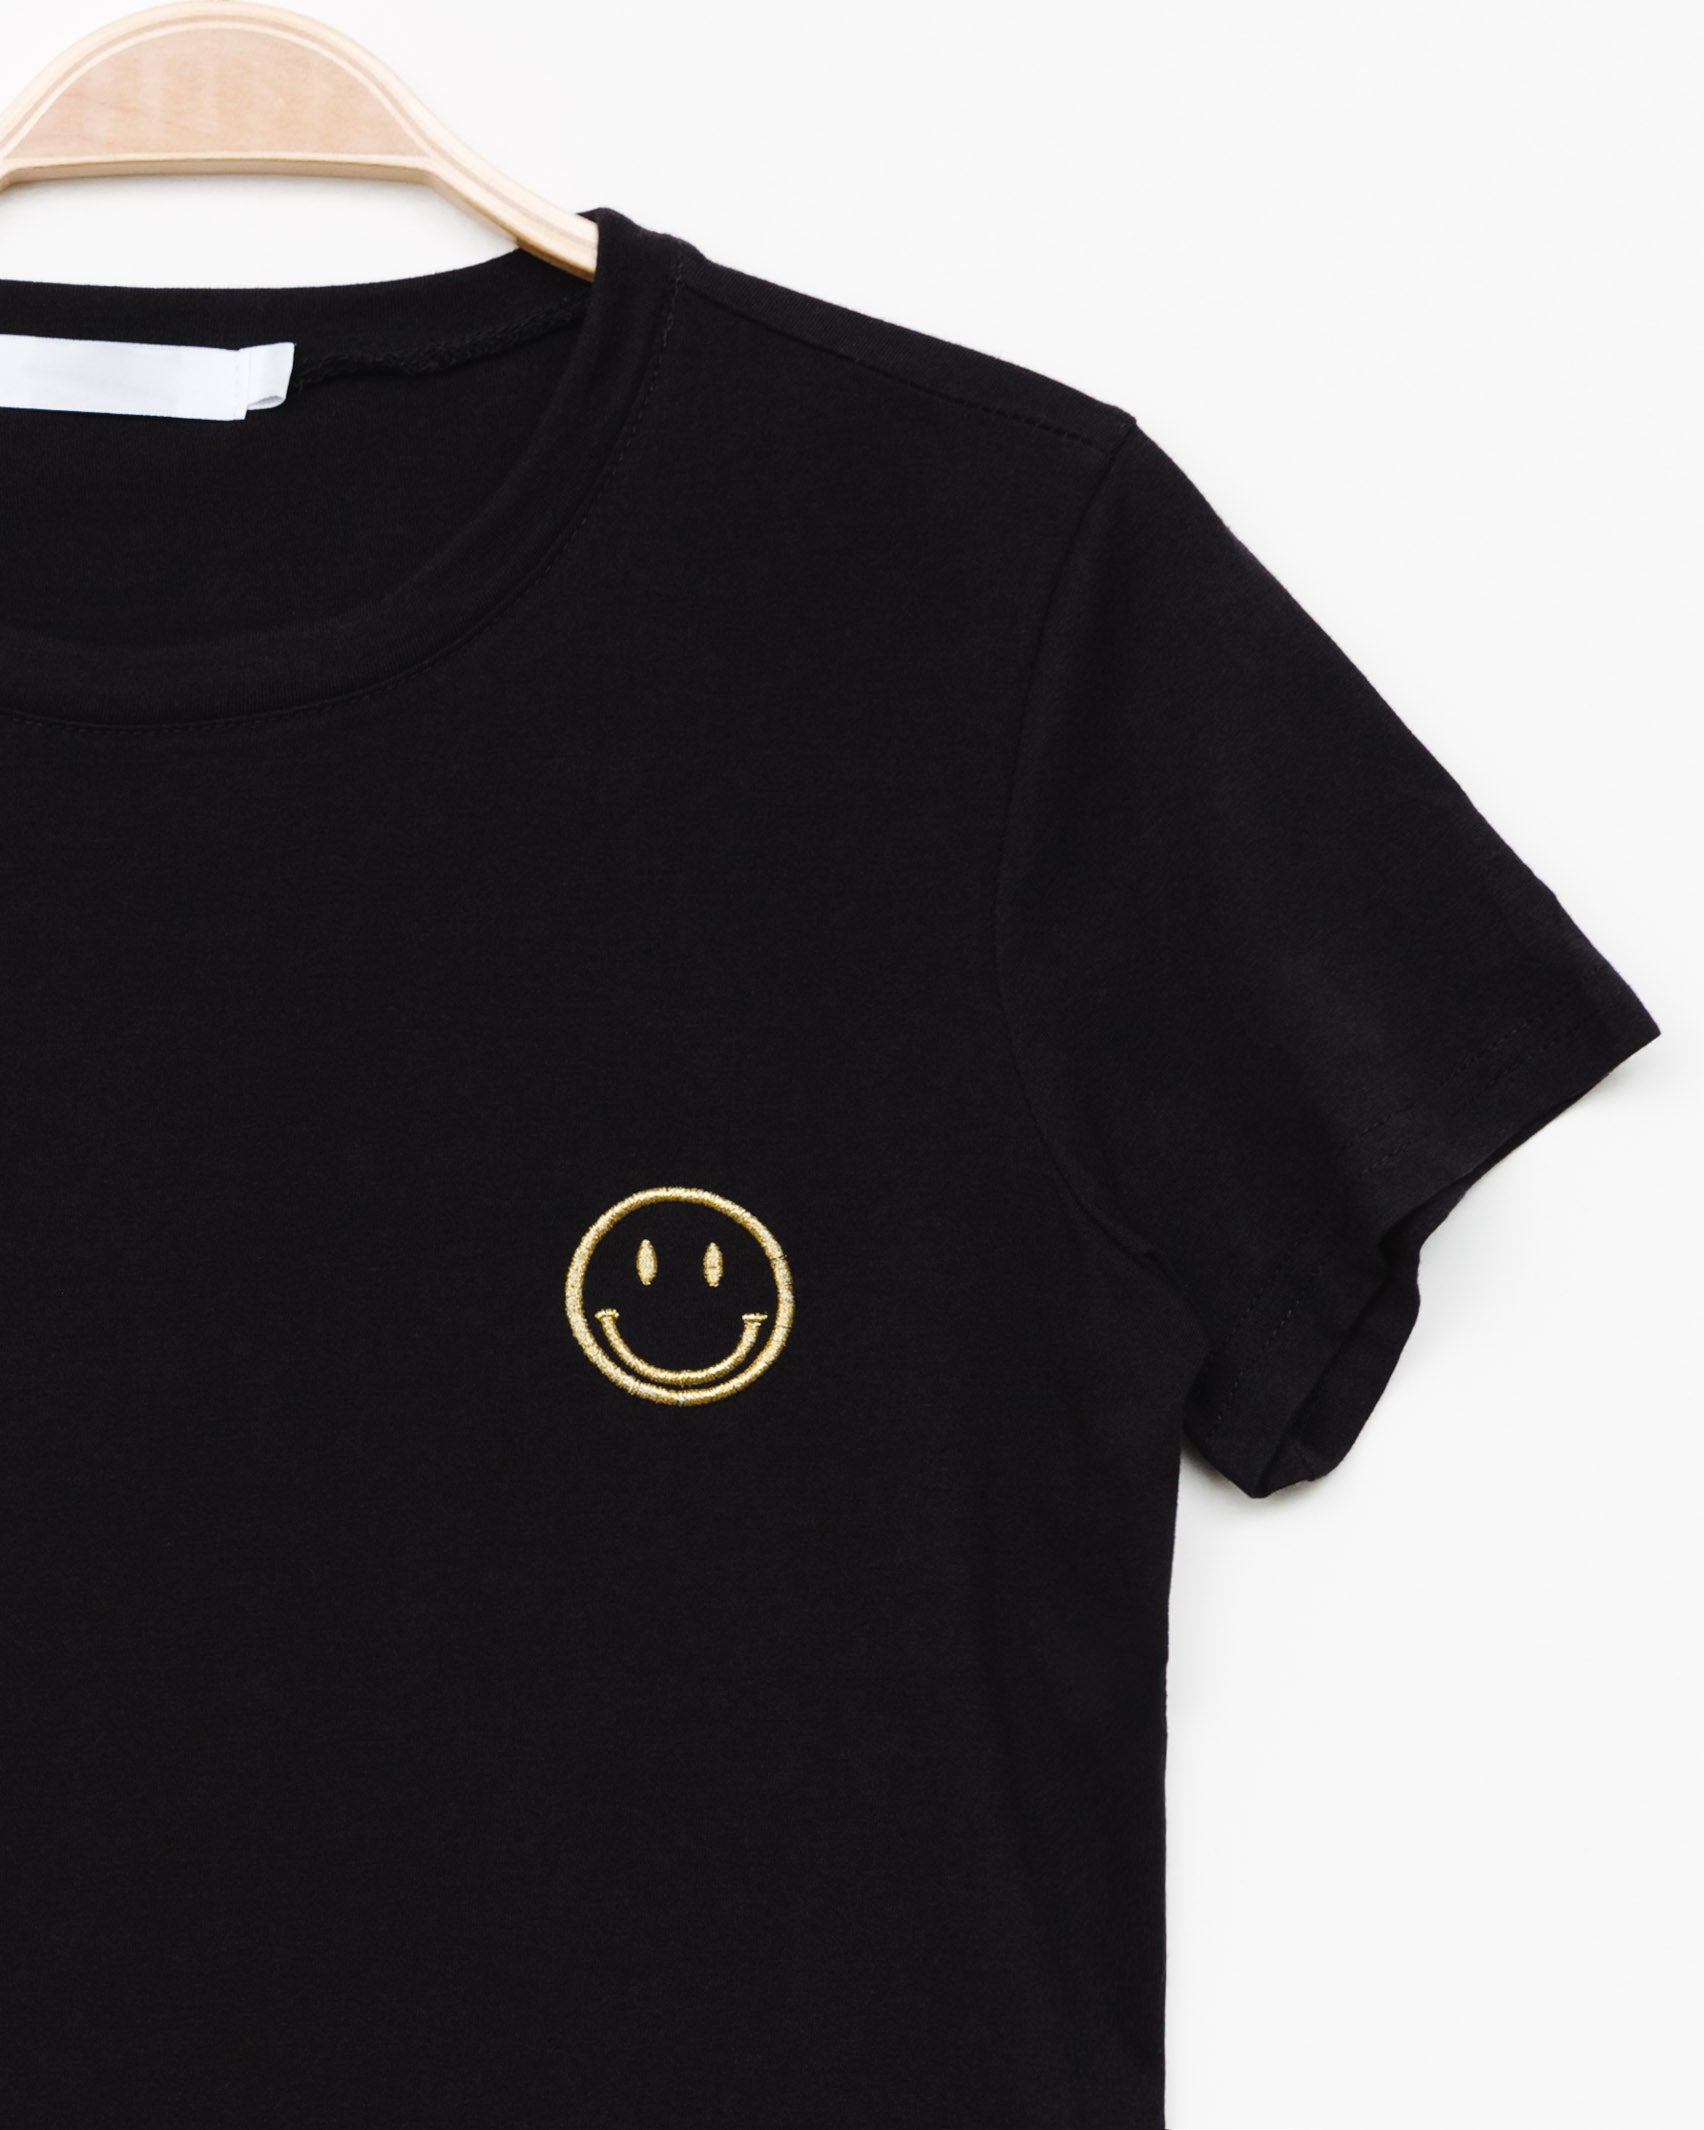 T-Shirt mit lächelndem Emojicon Stickerei - Broke + Schön#farbe_black